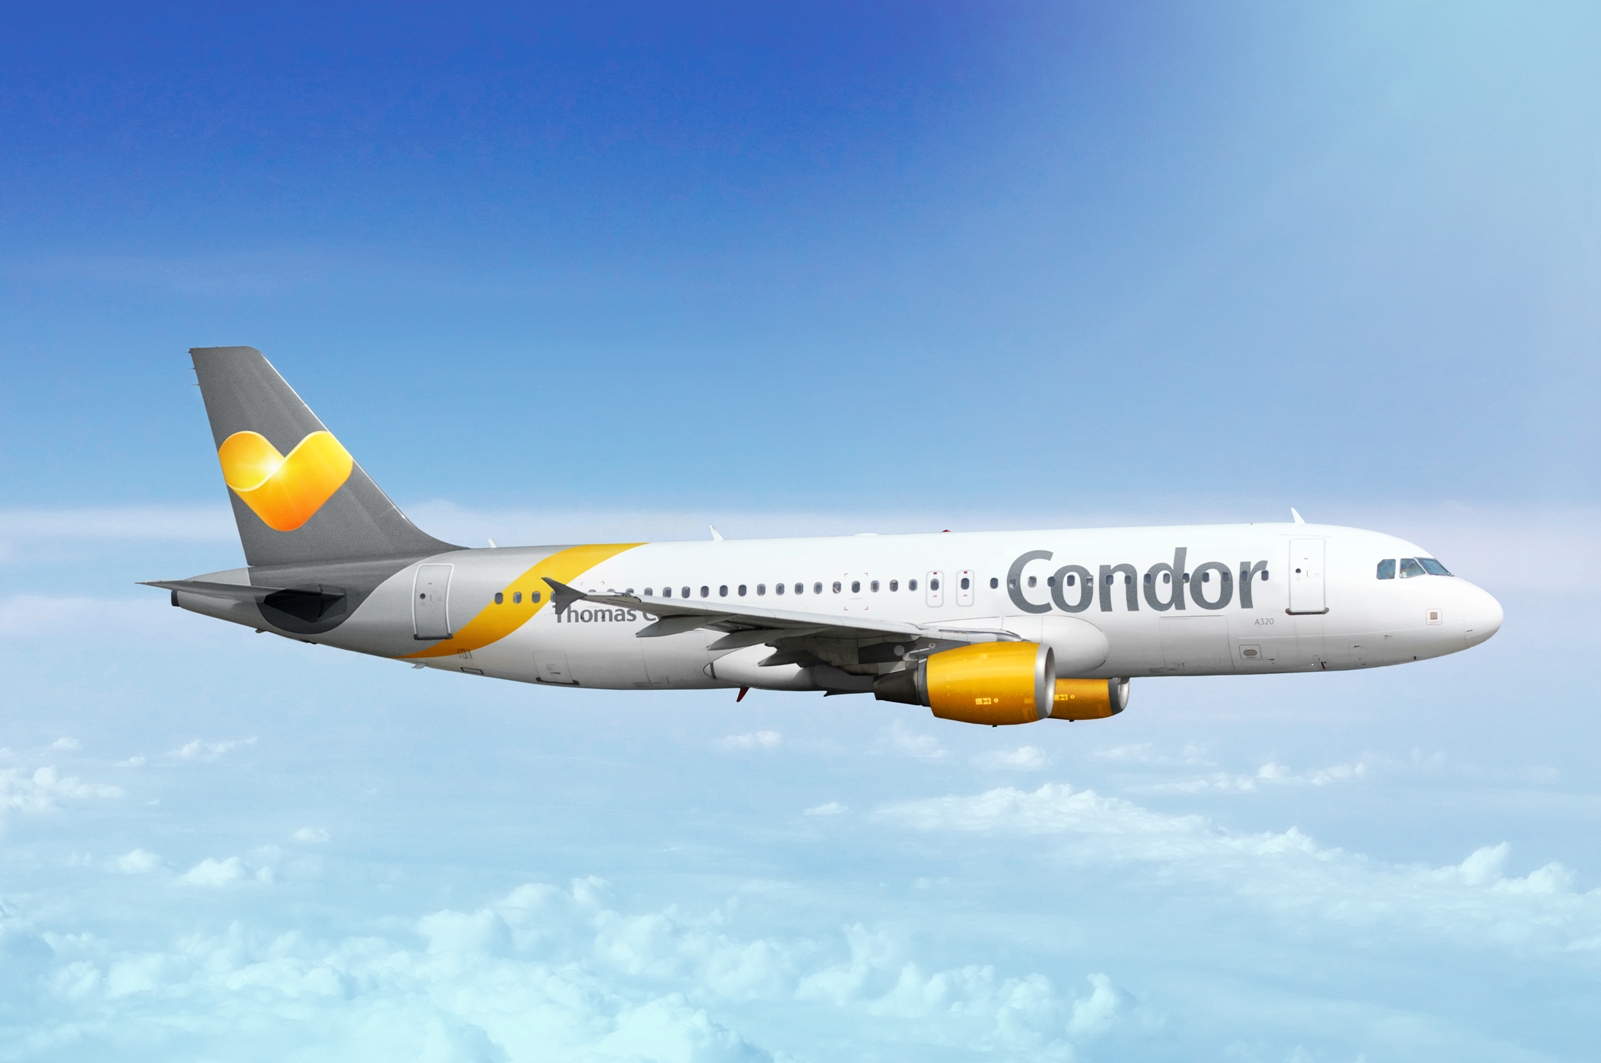 Condor: «Важен туристически нейтральный перевозчик»